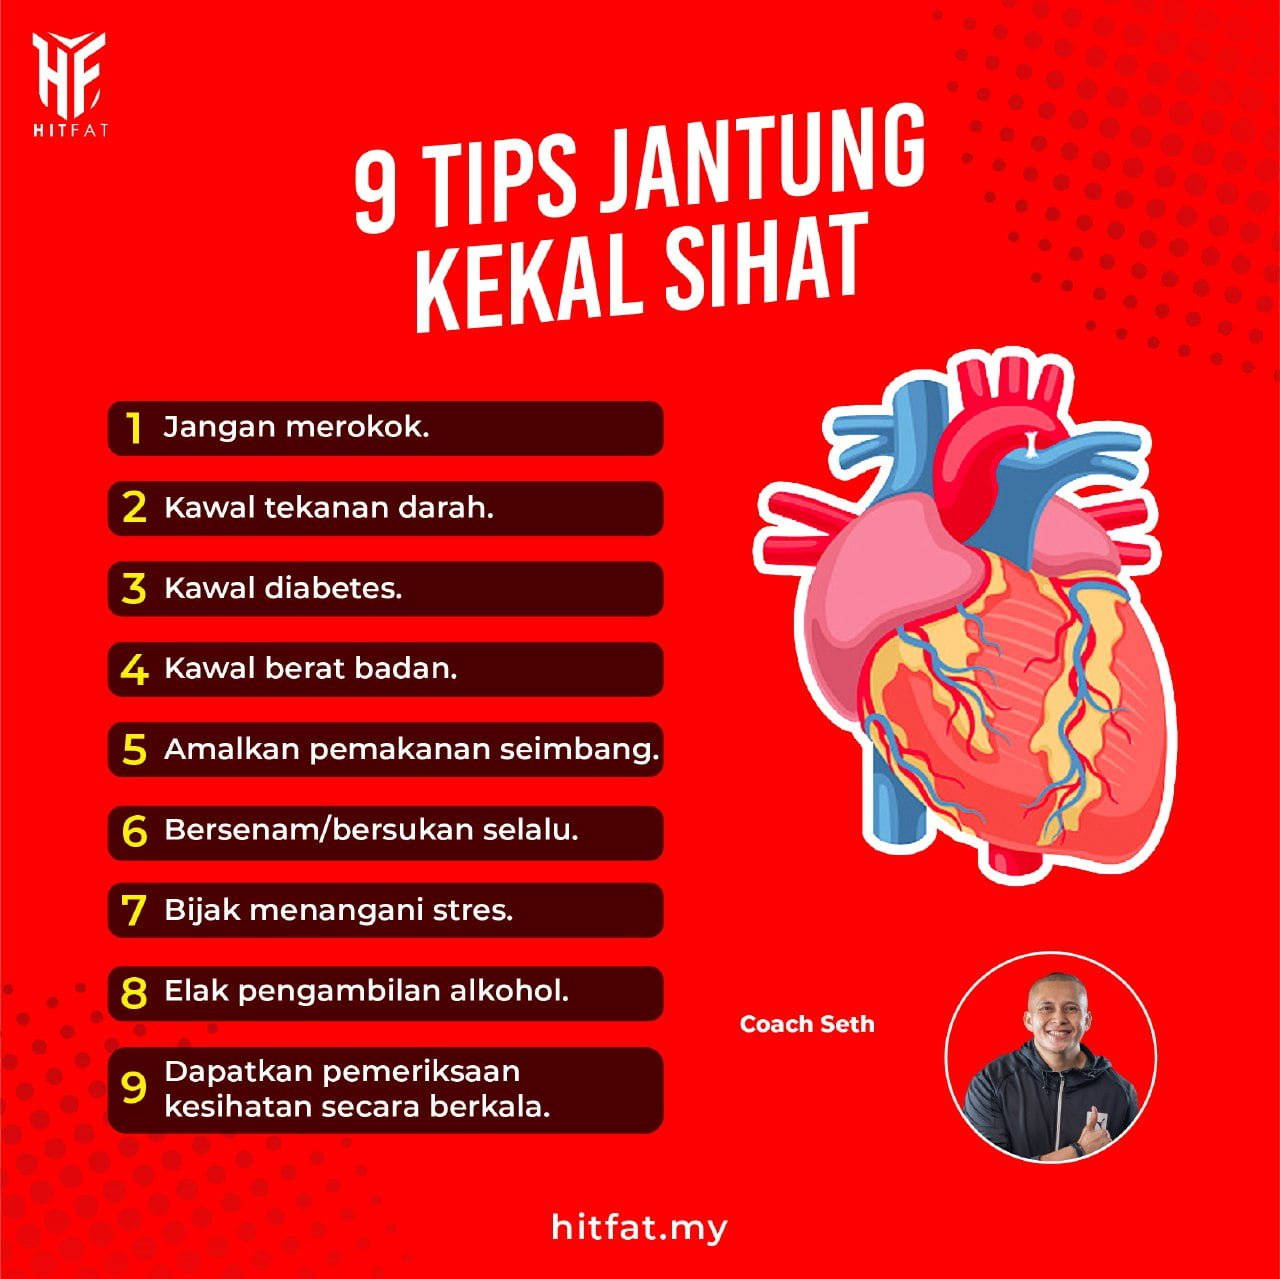 9 Tips Jantung Kekal Sihat